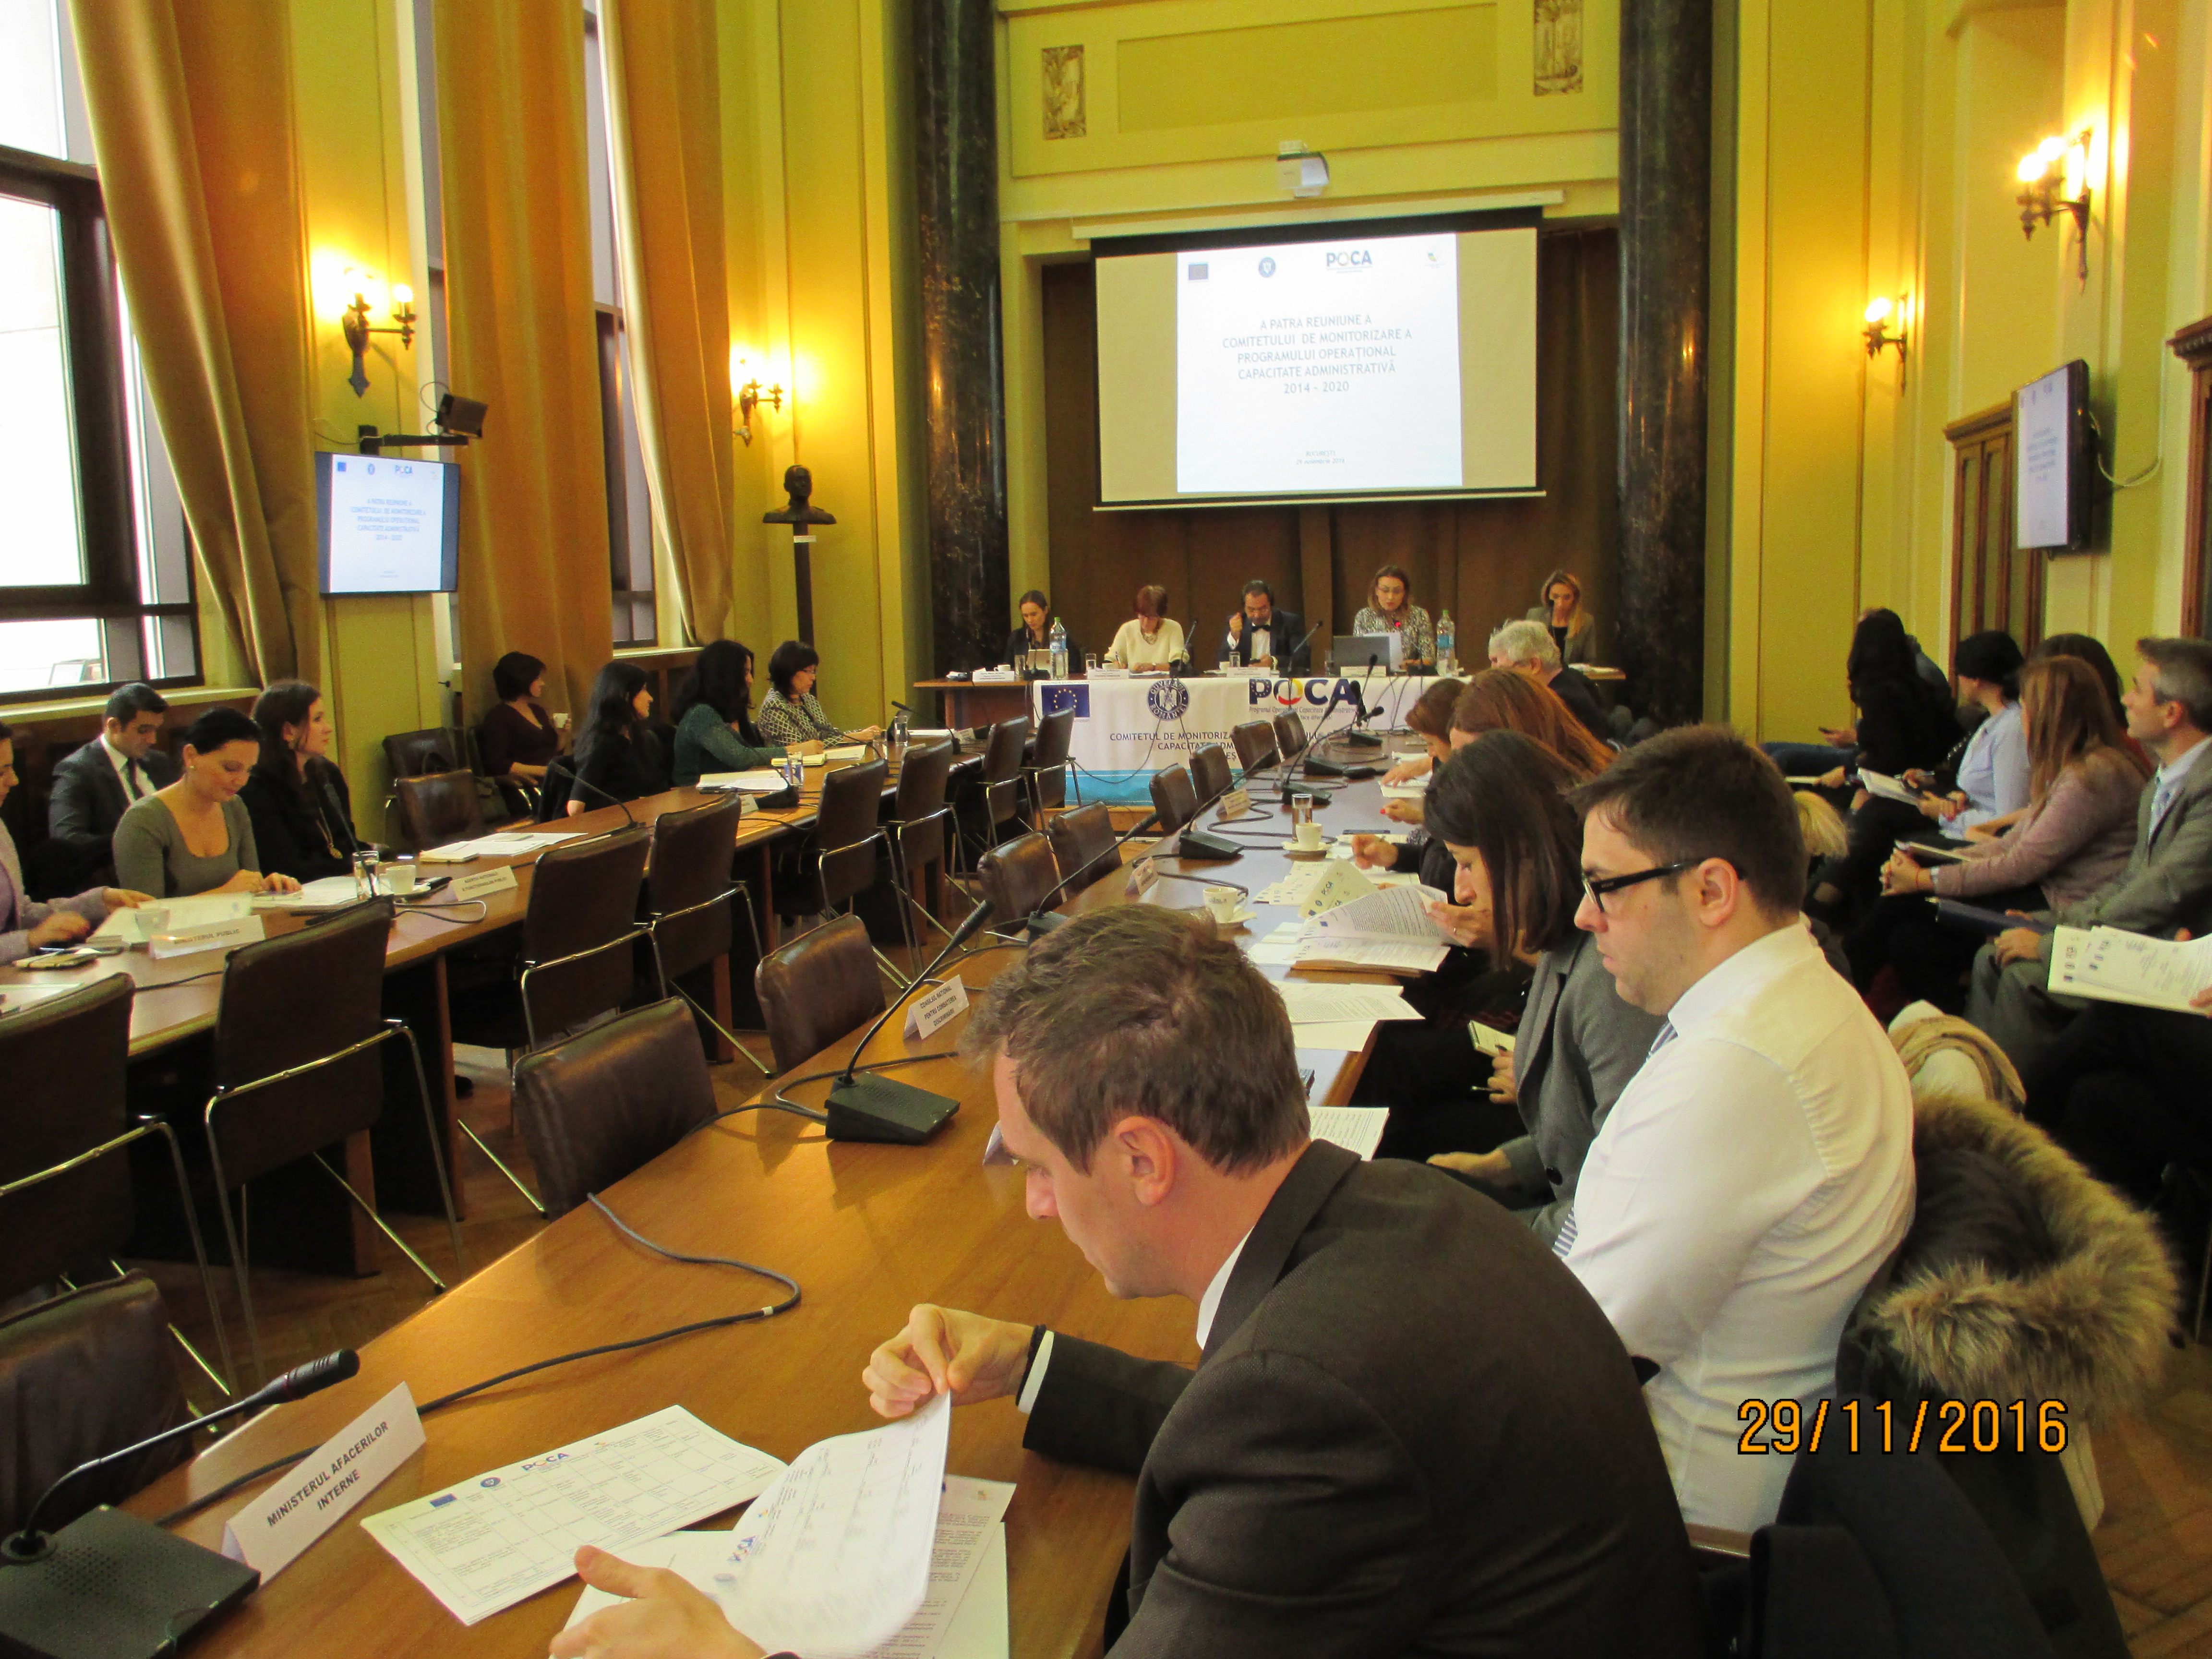 A patra reuniune a CM POCA 2014-2020 va avea loc la București